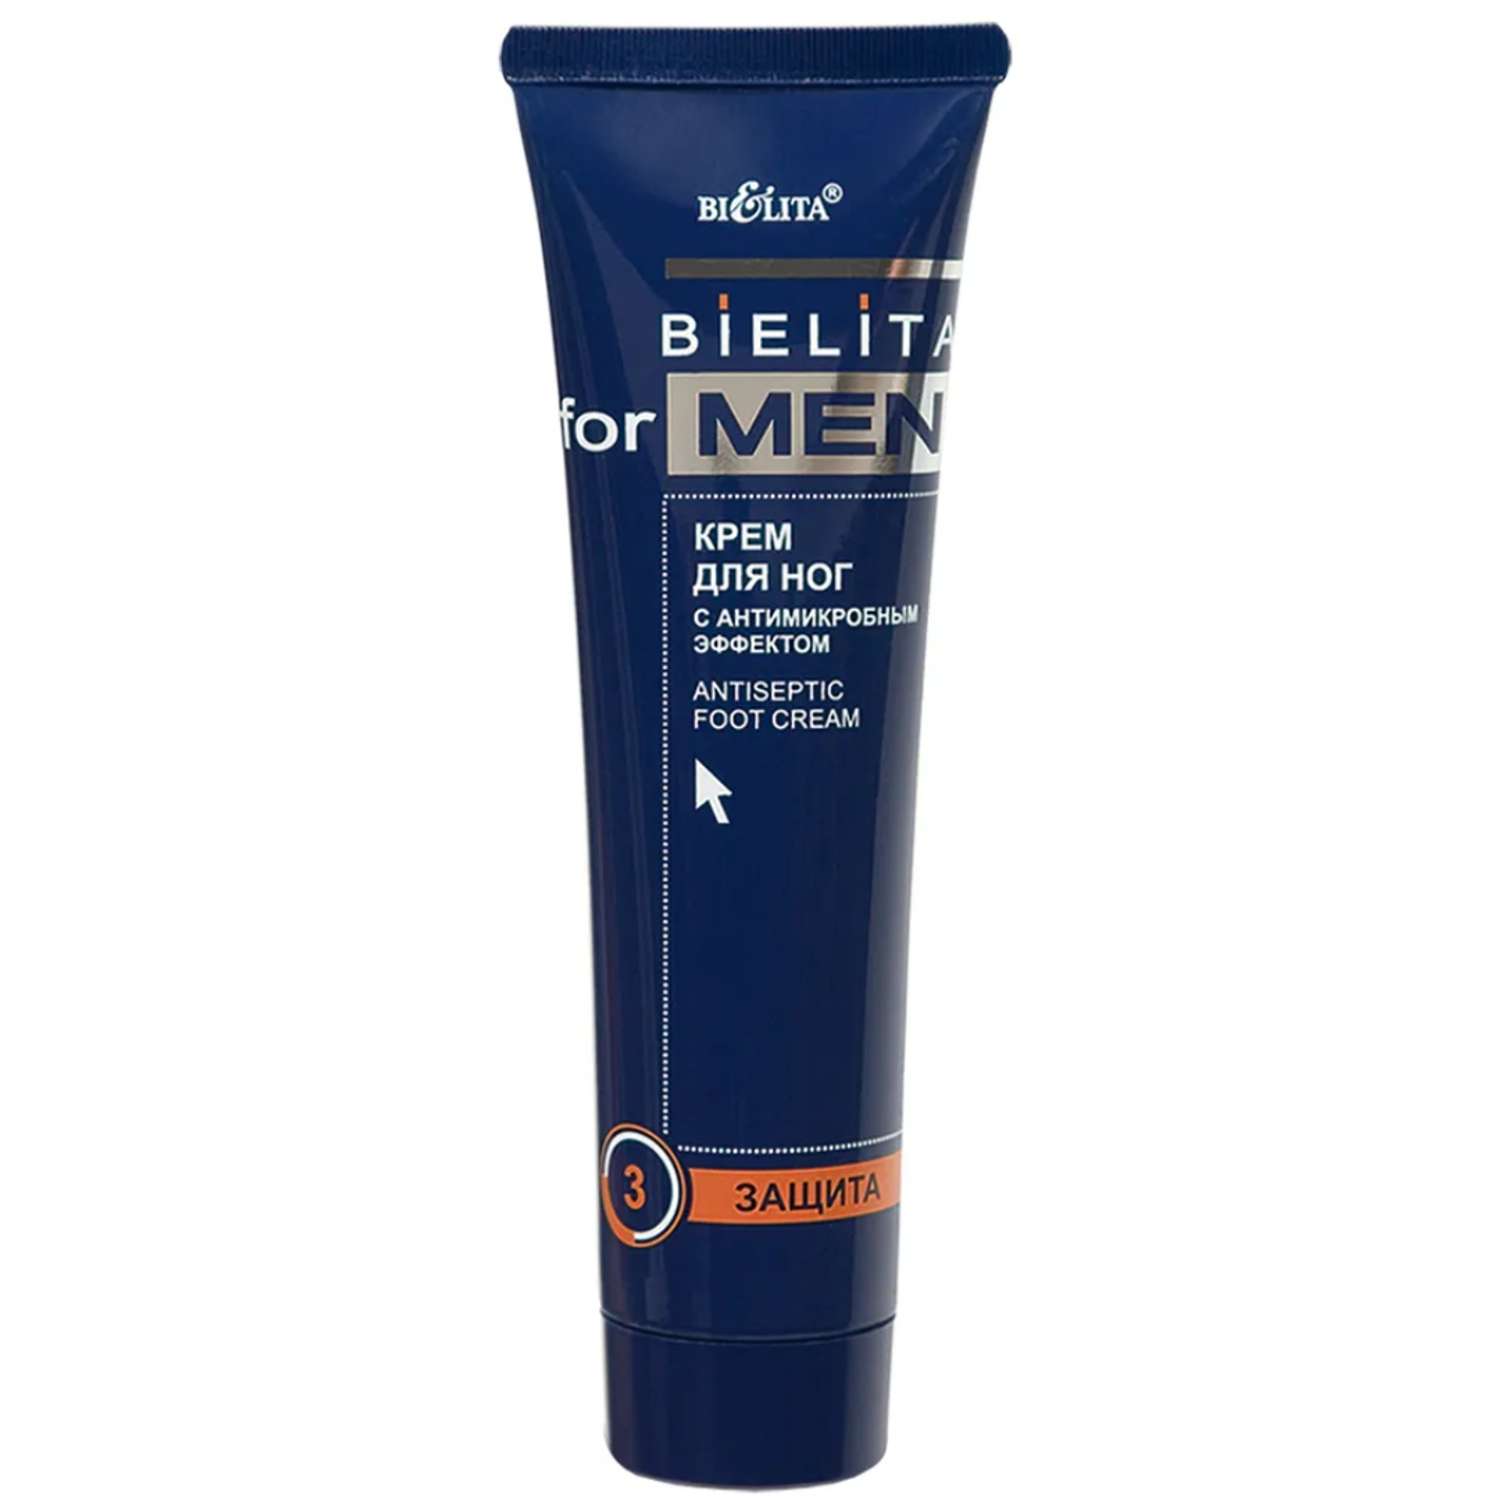 Крем для ног БЕЛИТА Belita for men с антимикробным эффектом 100 мл - фото 1